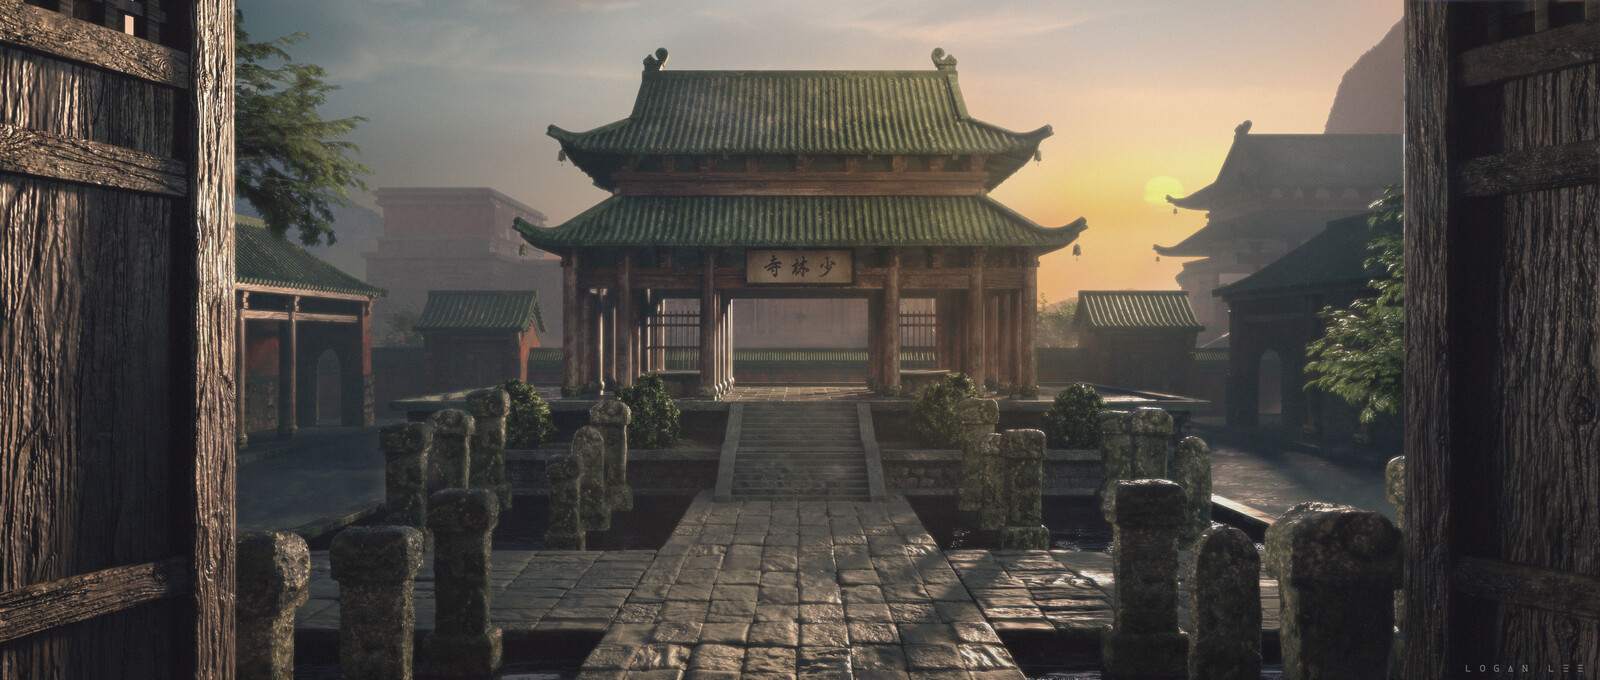 Shaolin Monastery | Temple